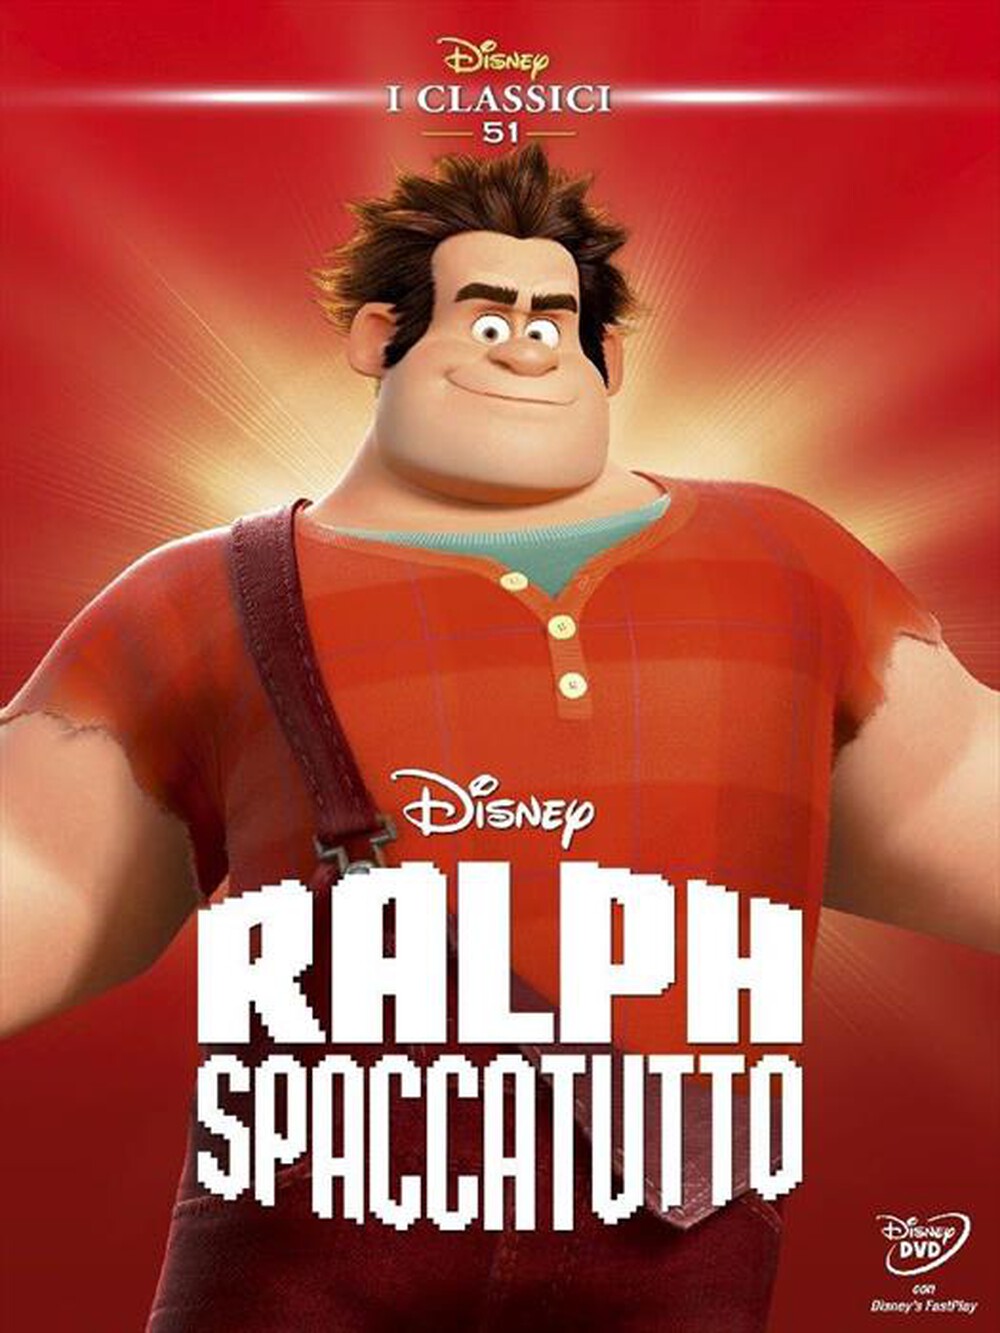 "WALT DISNEY - Ralph Spaccatutto"